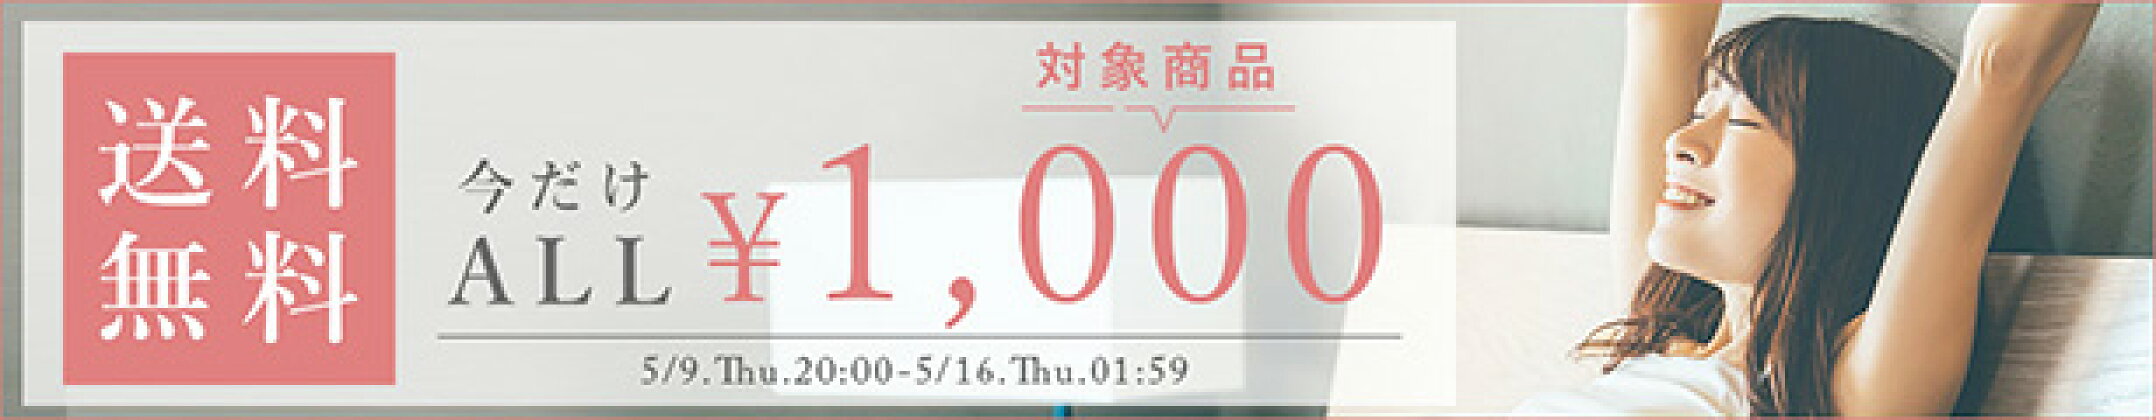 1000円all